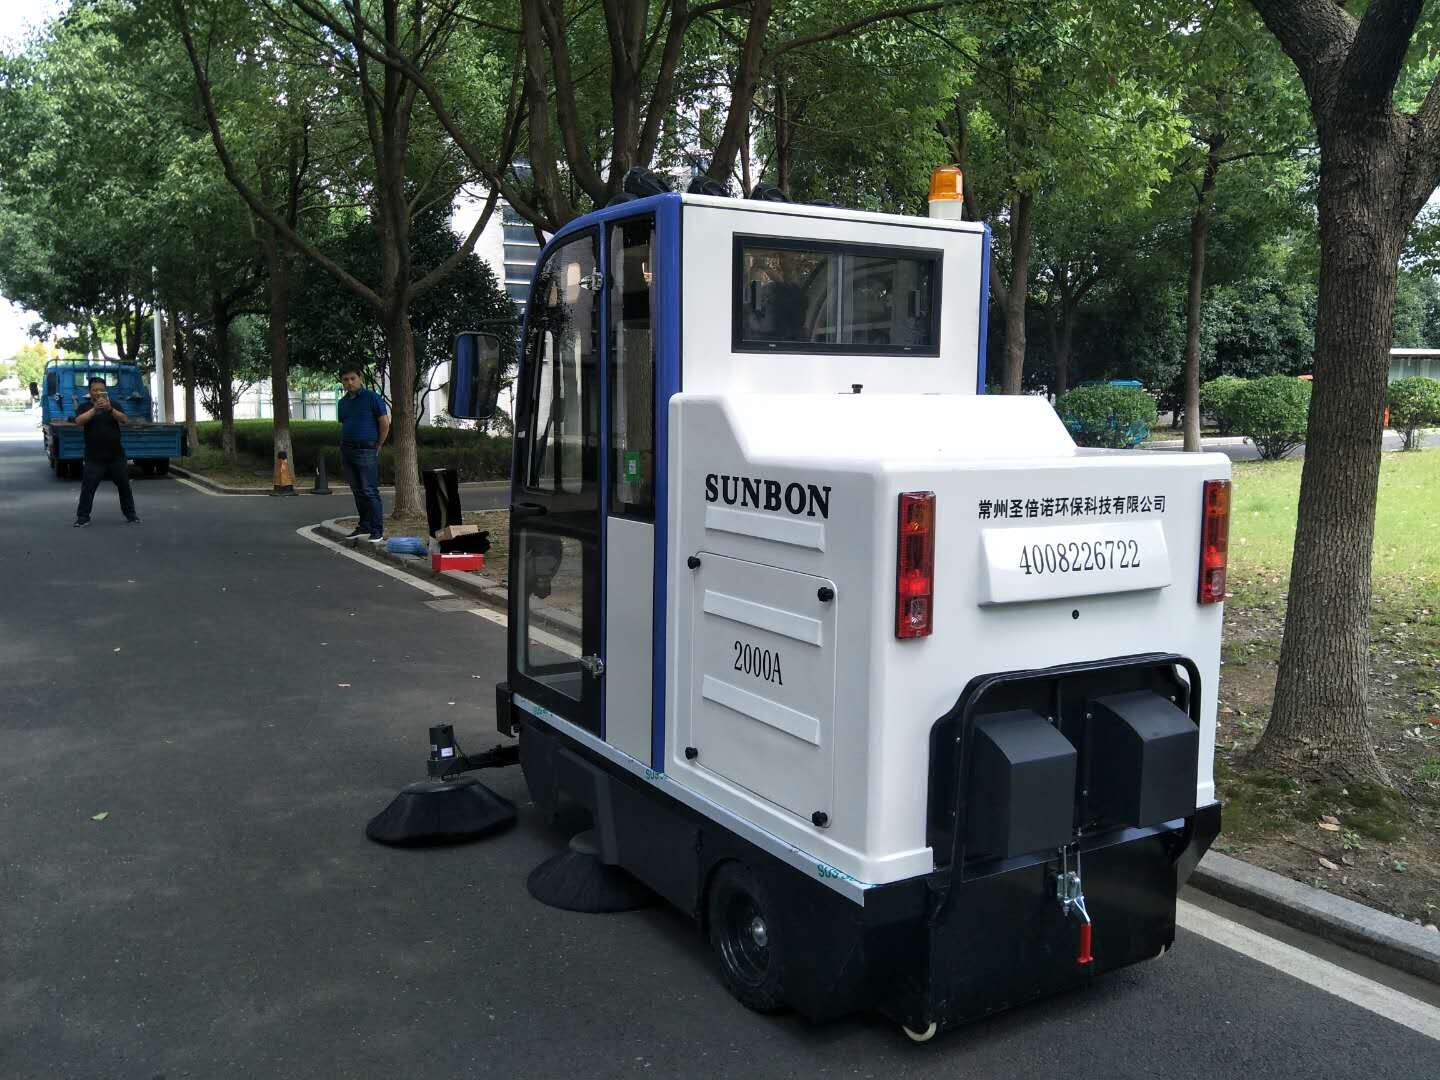 驾驶式扫地机成为公园保洁利器